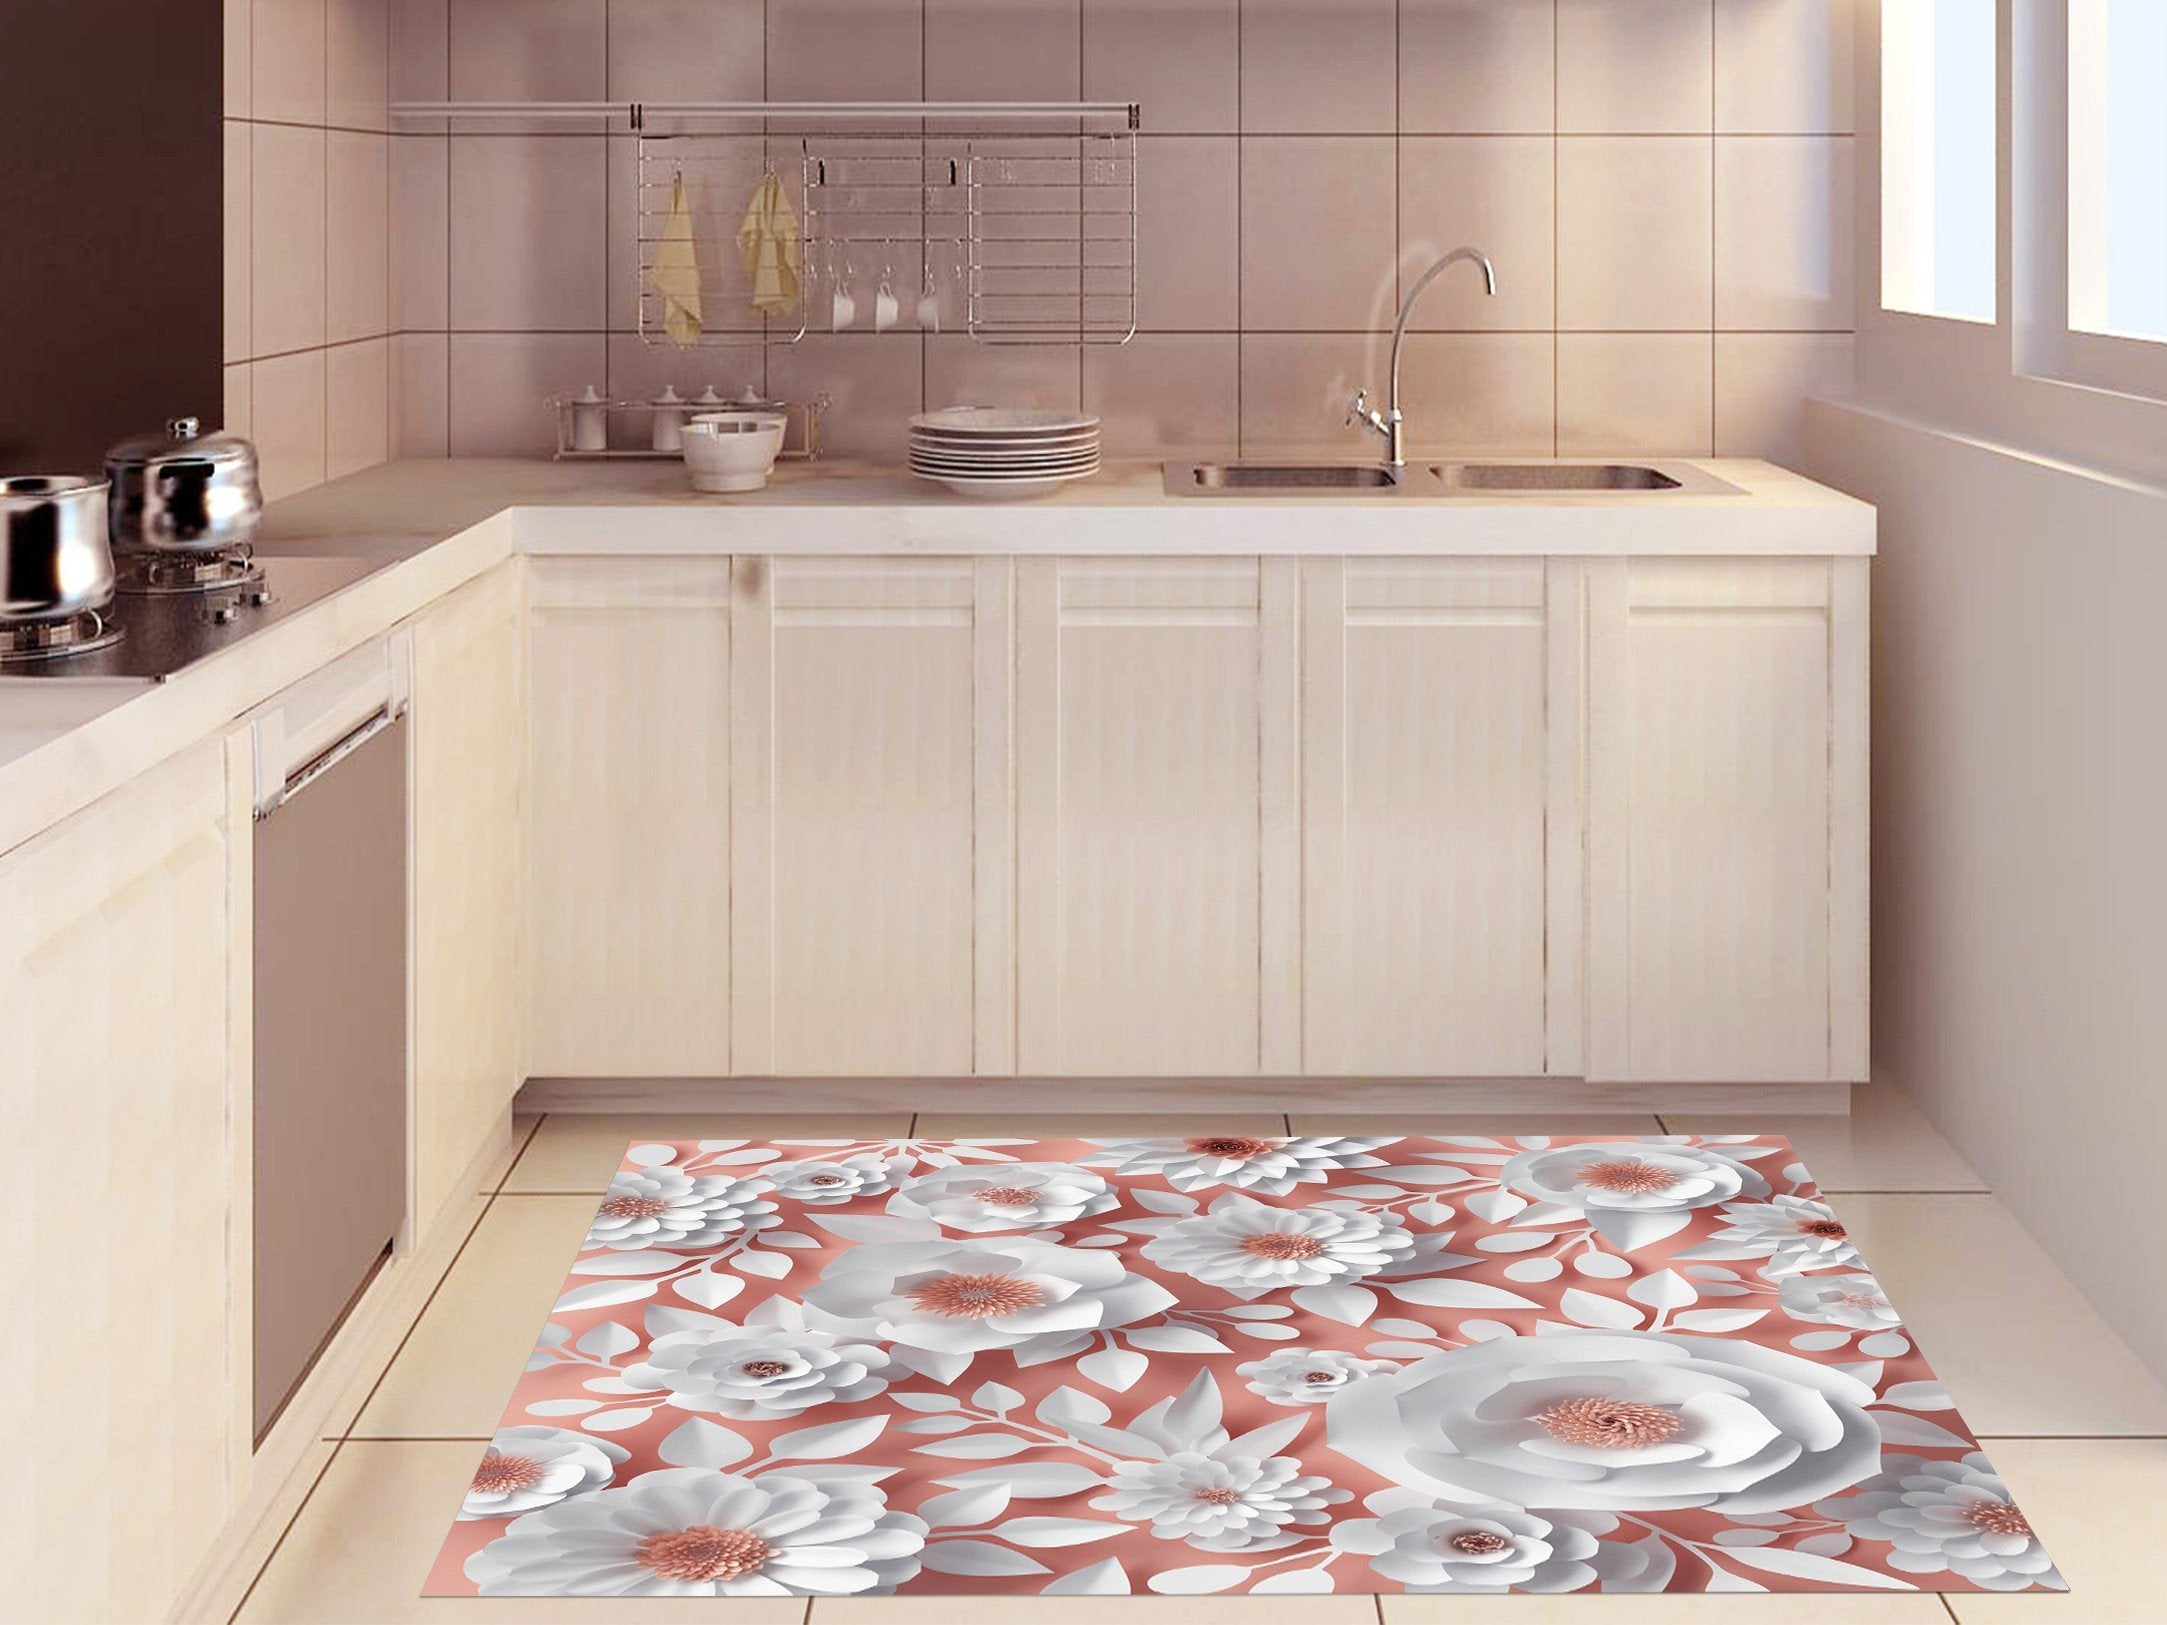 3D Paper Flowers 685 Kitchen Mat Floor Mural Wallpaper AJ Wallpaper 